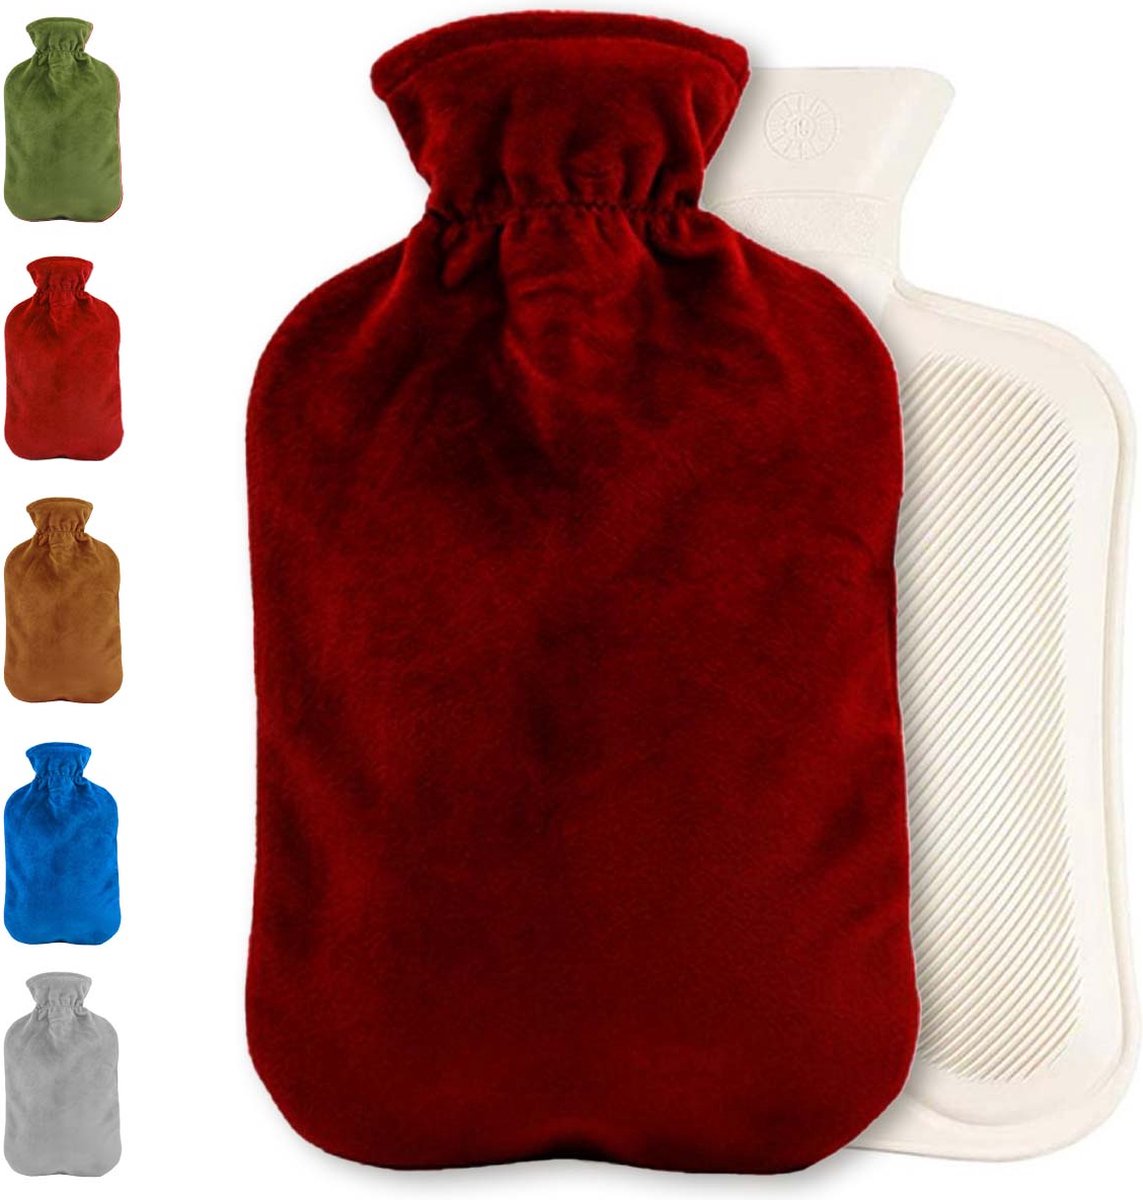 Warmwaterkruik met fleece hoes | Warmtekruik | Kruik | Warmwaterkruik | Rubber | 2 liter | Bordeaux rood | Inclusief fleece hoes | Able & Borret